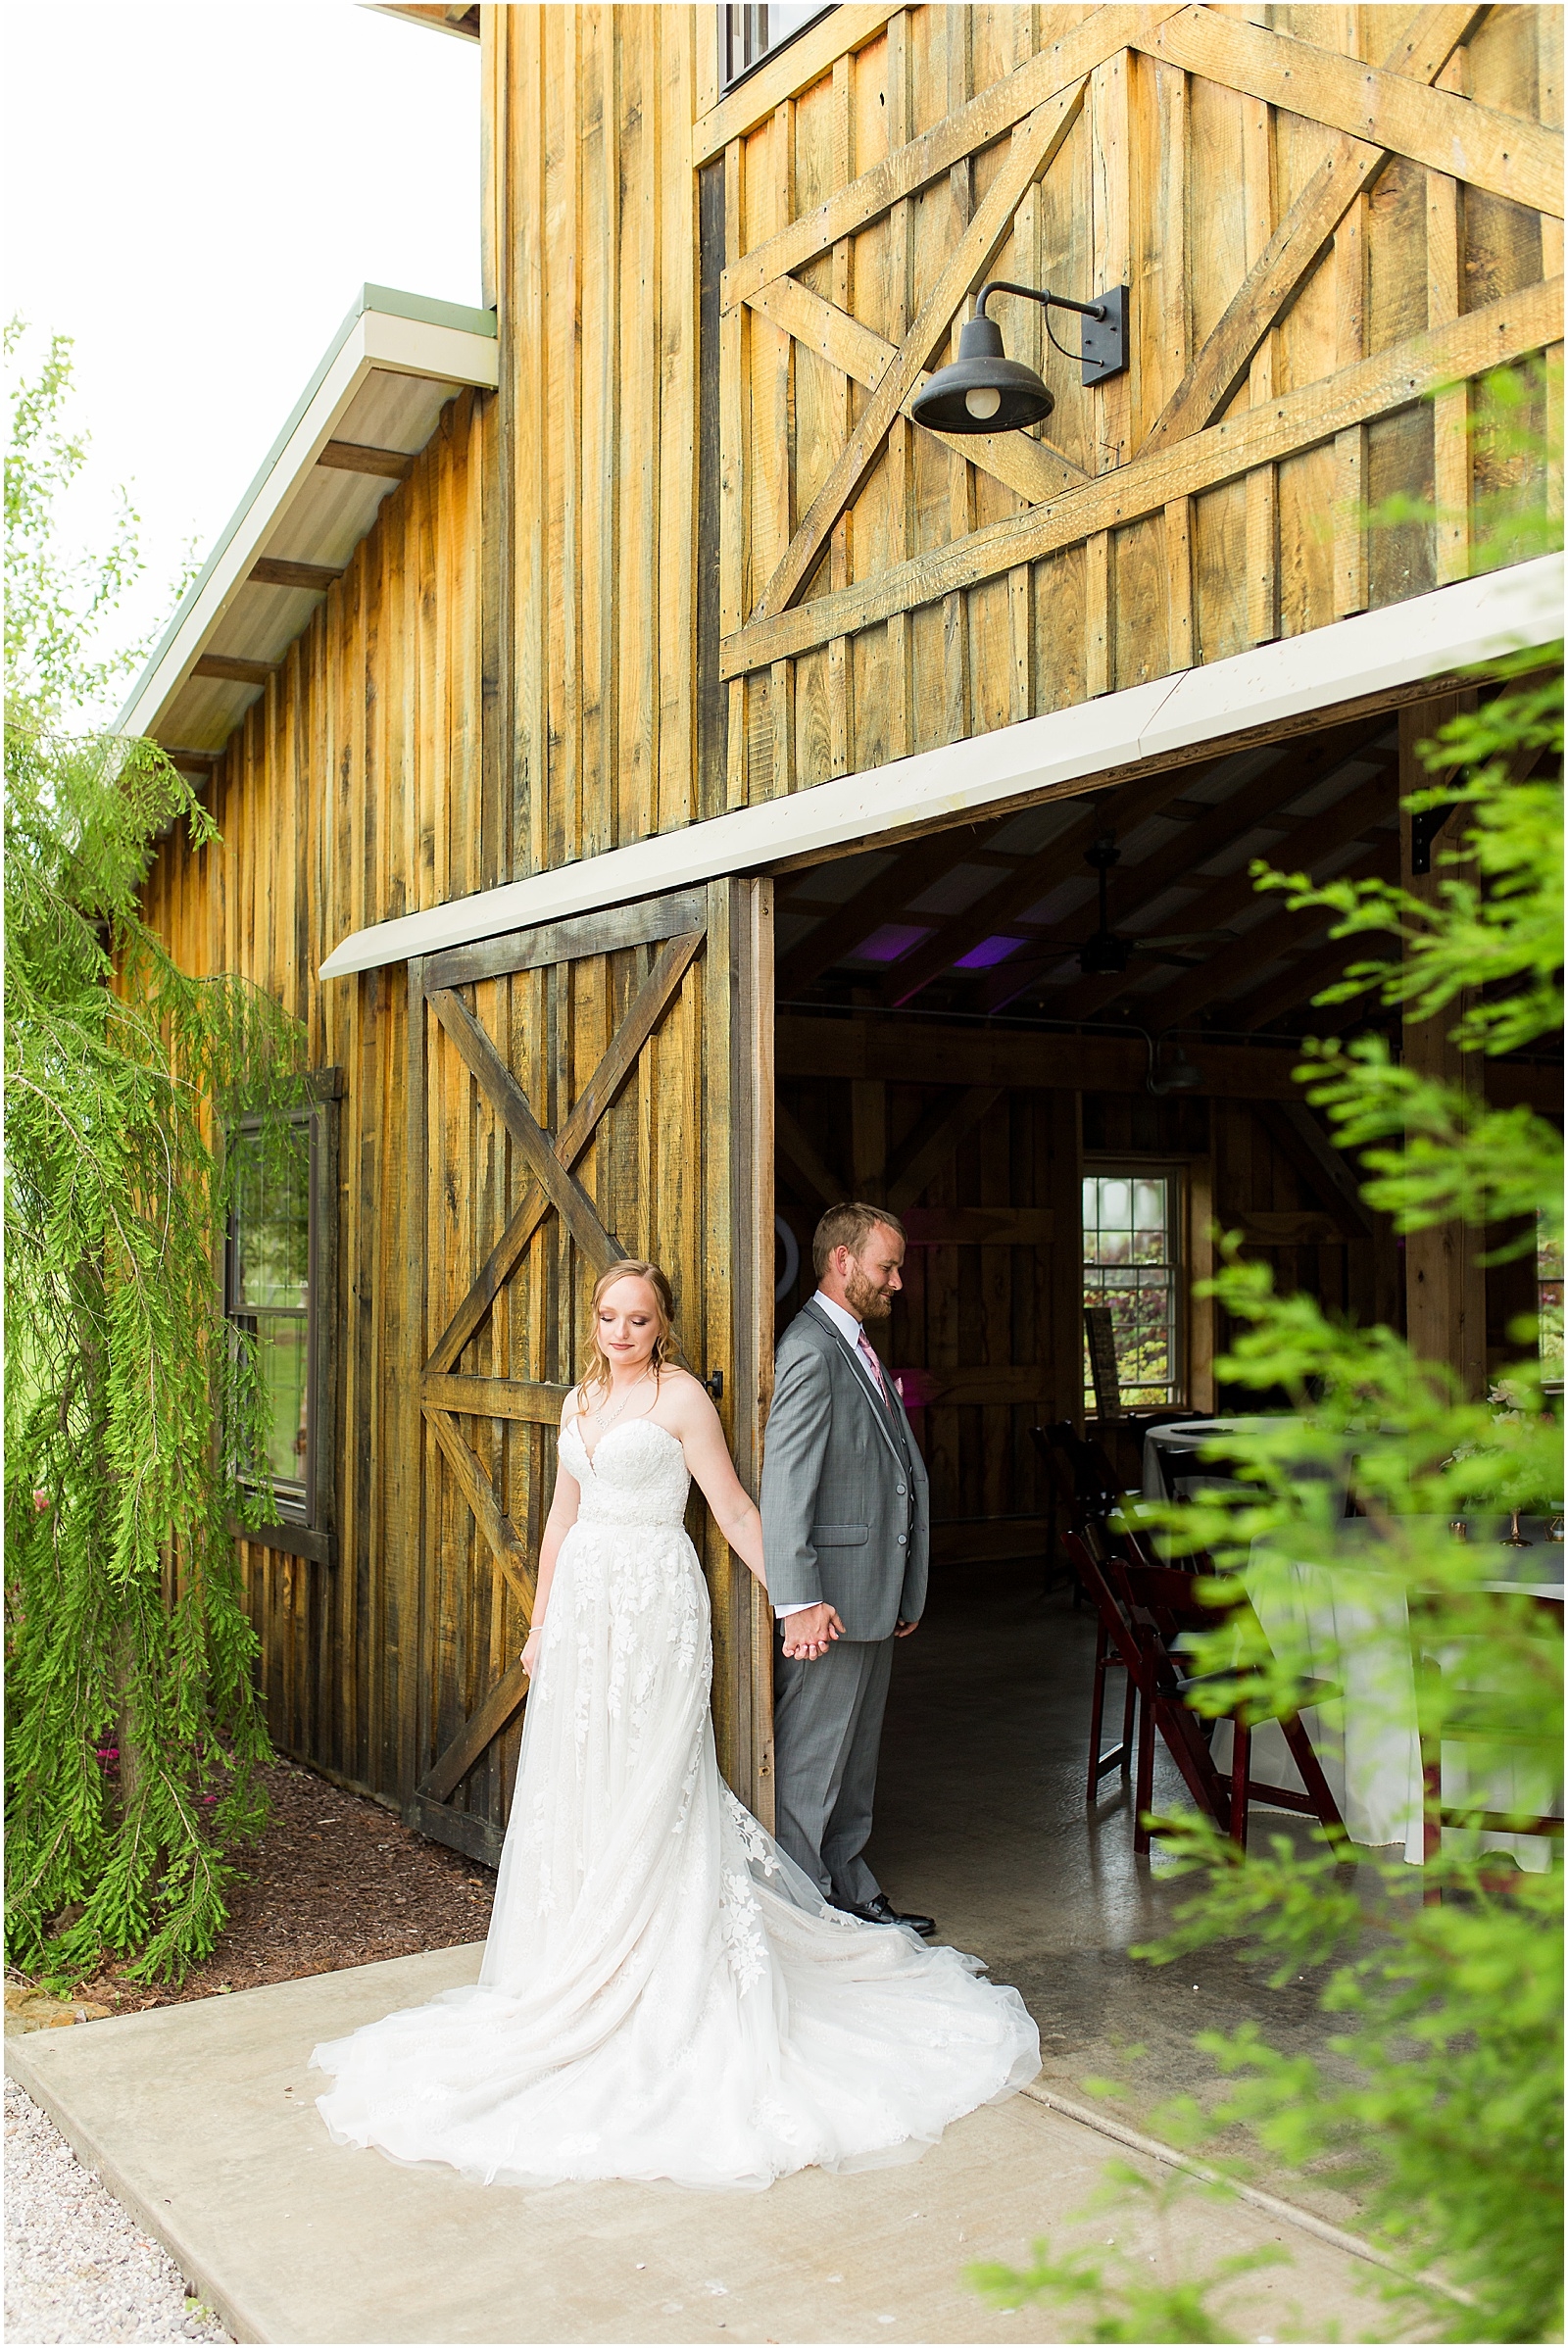 Sierra and Eddie | Wedding BlogBret and Brandie Blog | @bretandbrandie-0047.jpg